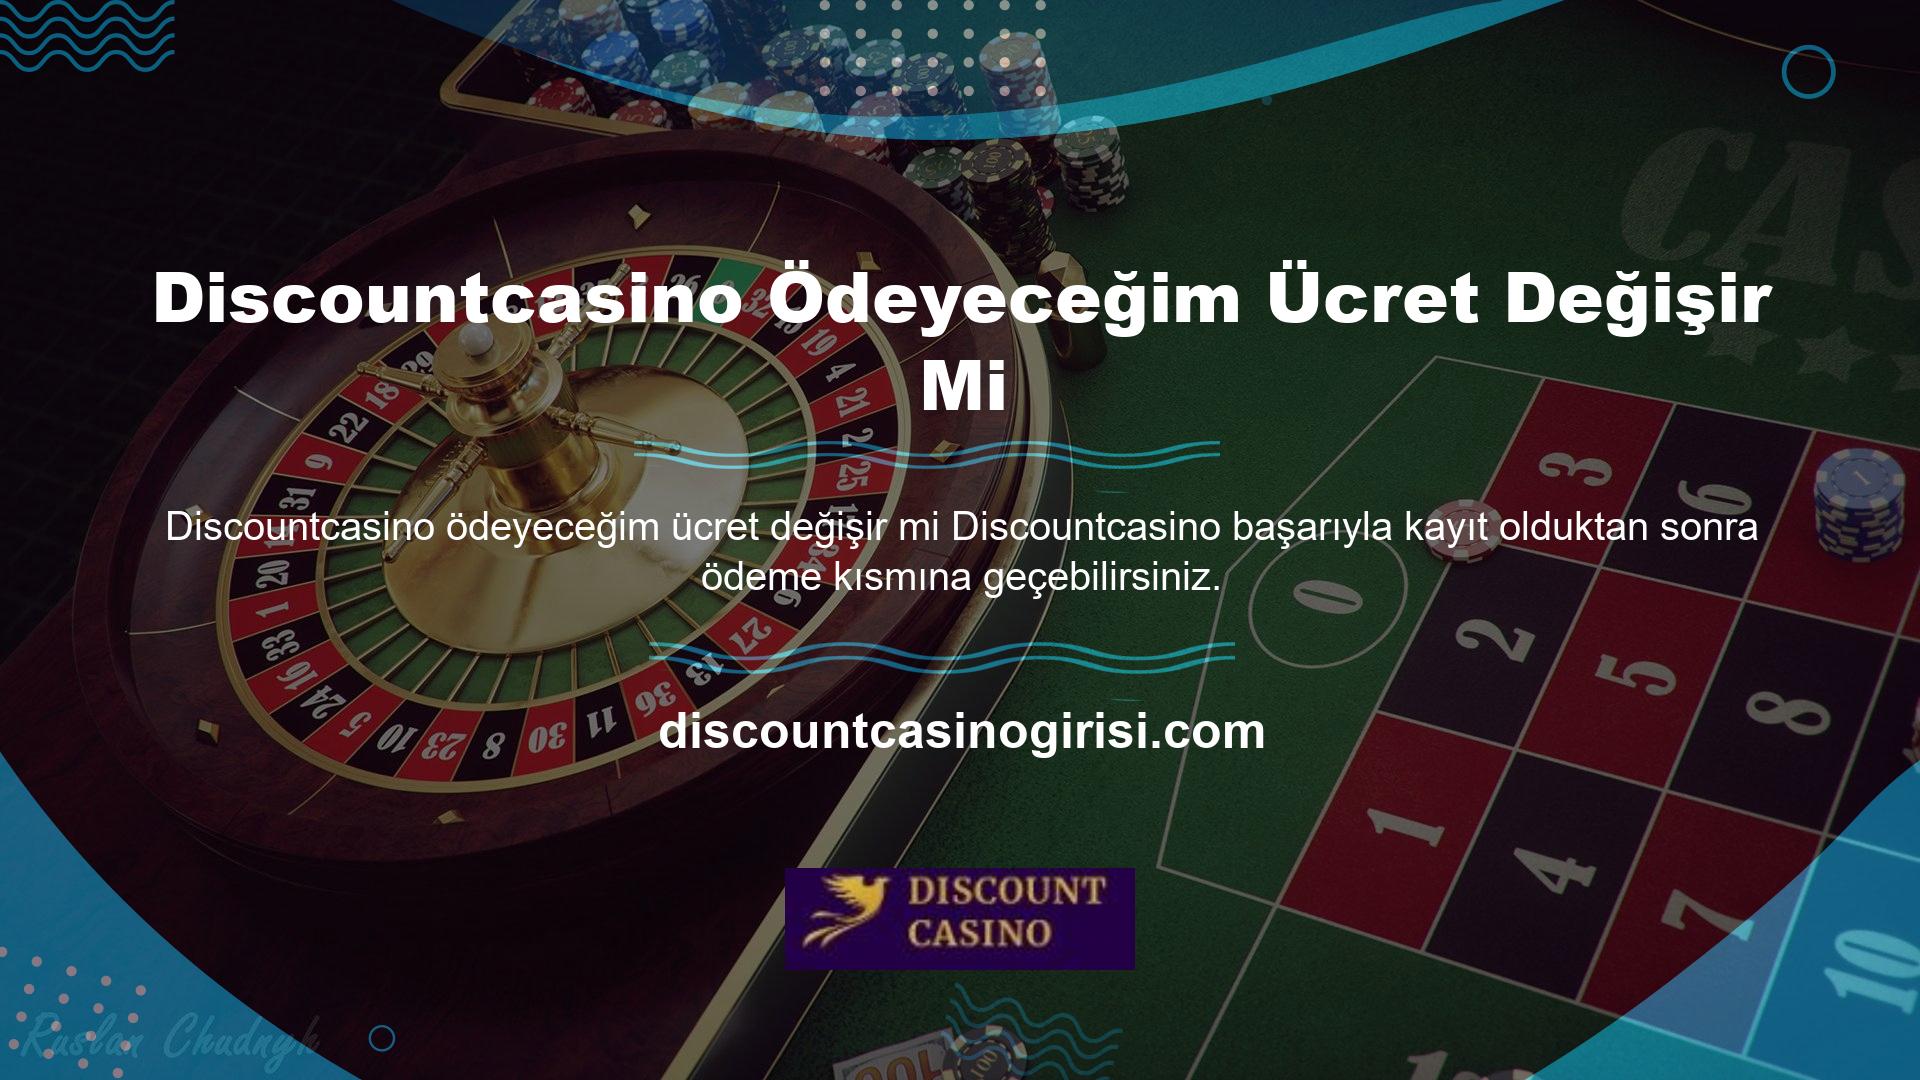 Hesabınıza para yatırdıktan sonra online casino katılabilir ve kazanabilirsiniz